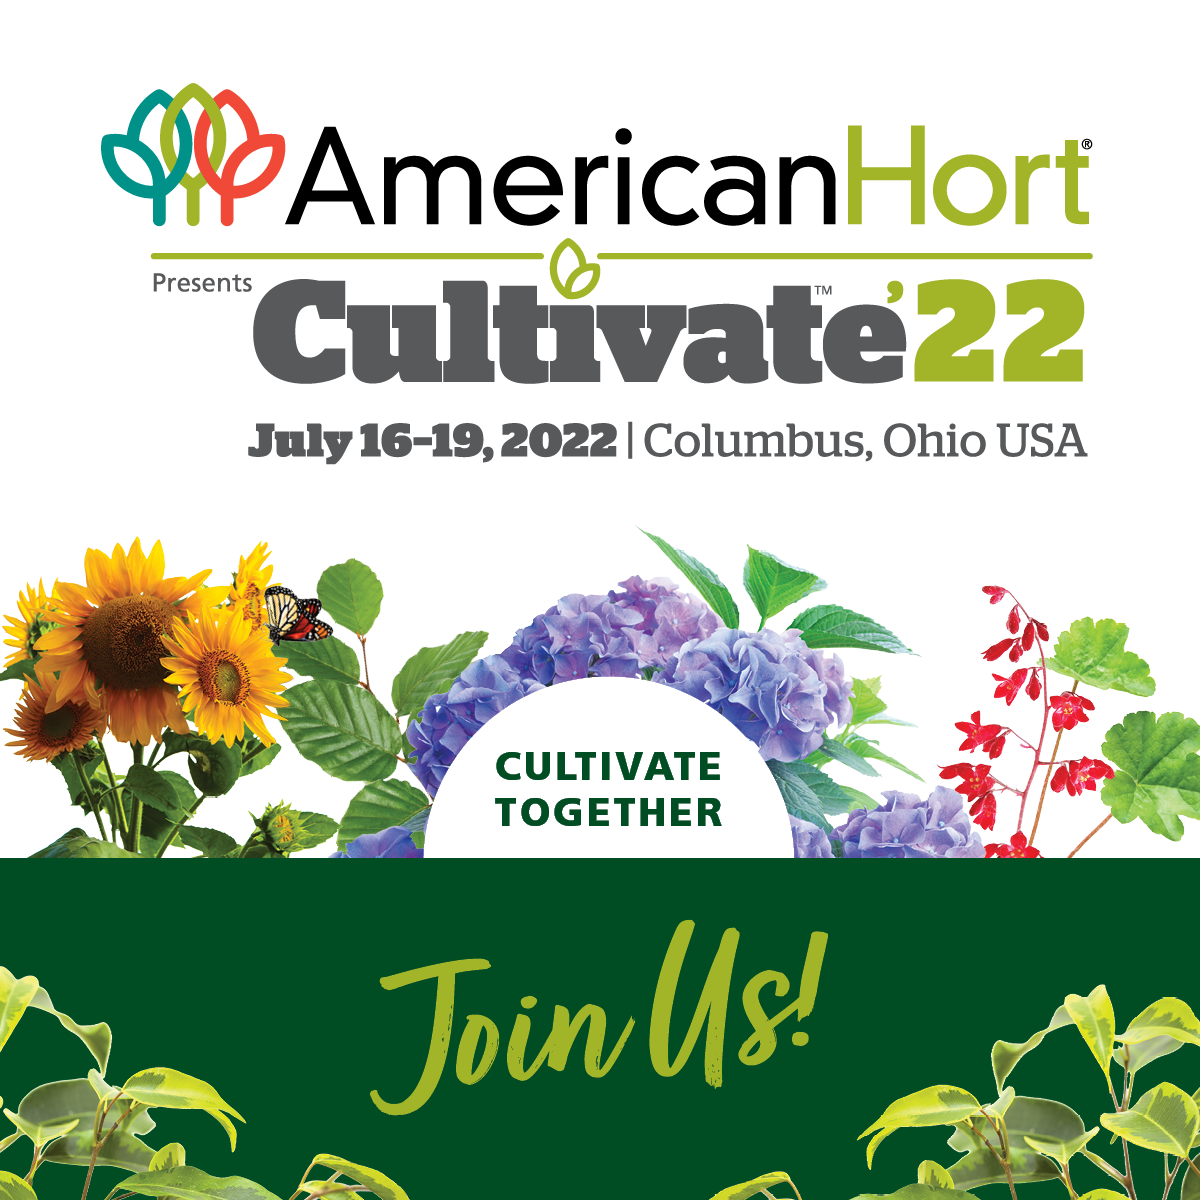 AmericanHort Cultivate22